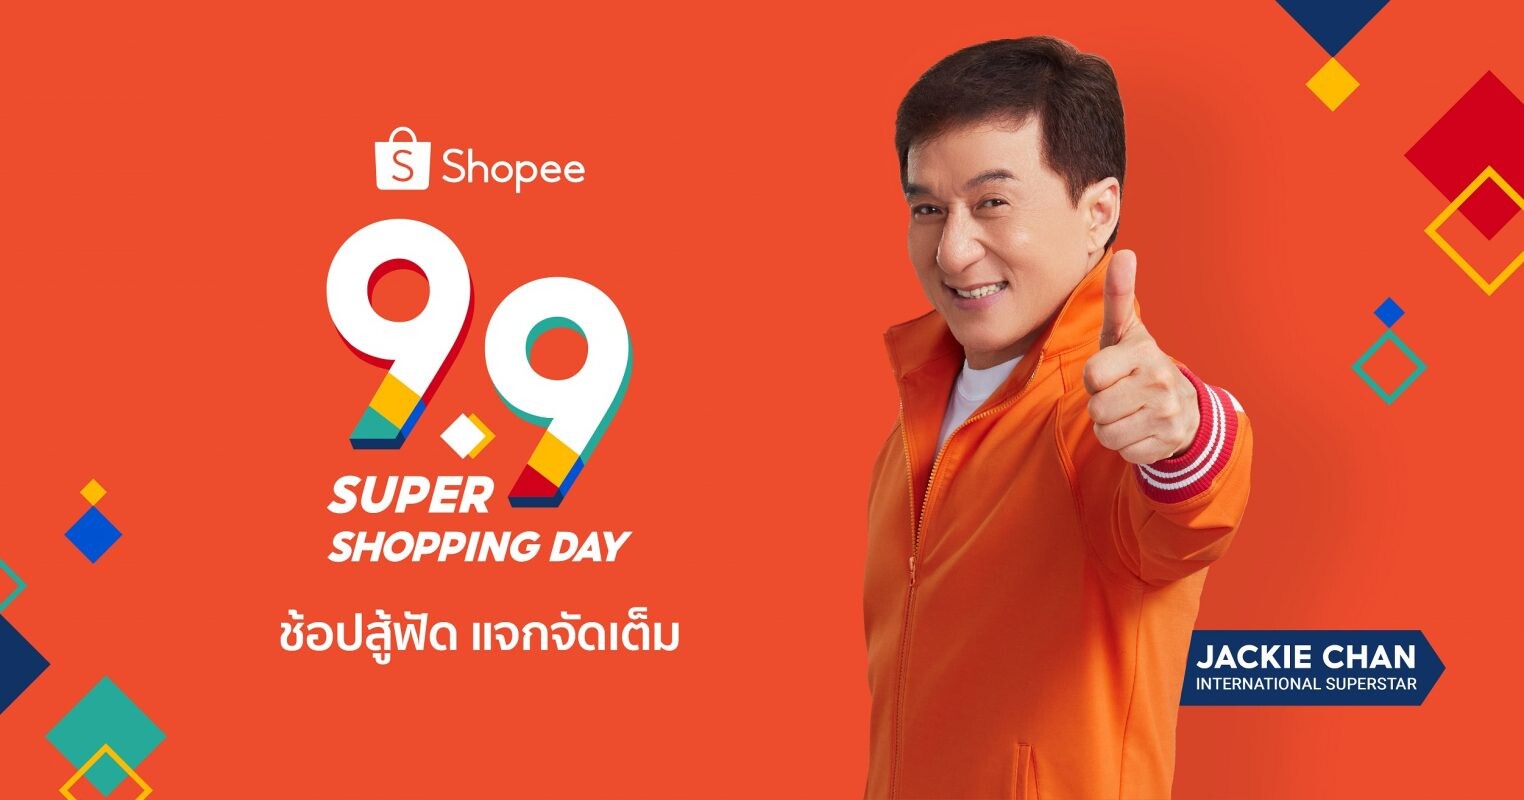 ช้อปสู้ฟัด แจกจัดเต็ม ไปกับ "แจ็คกี้ ชาน" ในแคมเปญ "Shopee 9.9 Super Shopping Day"